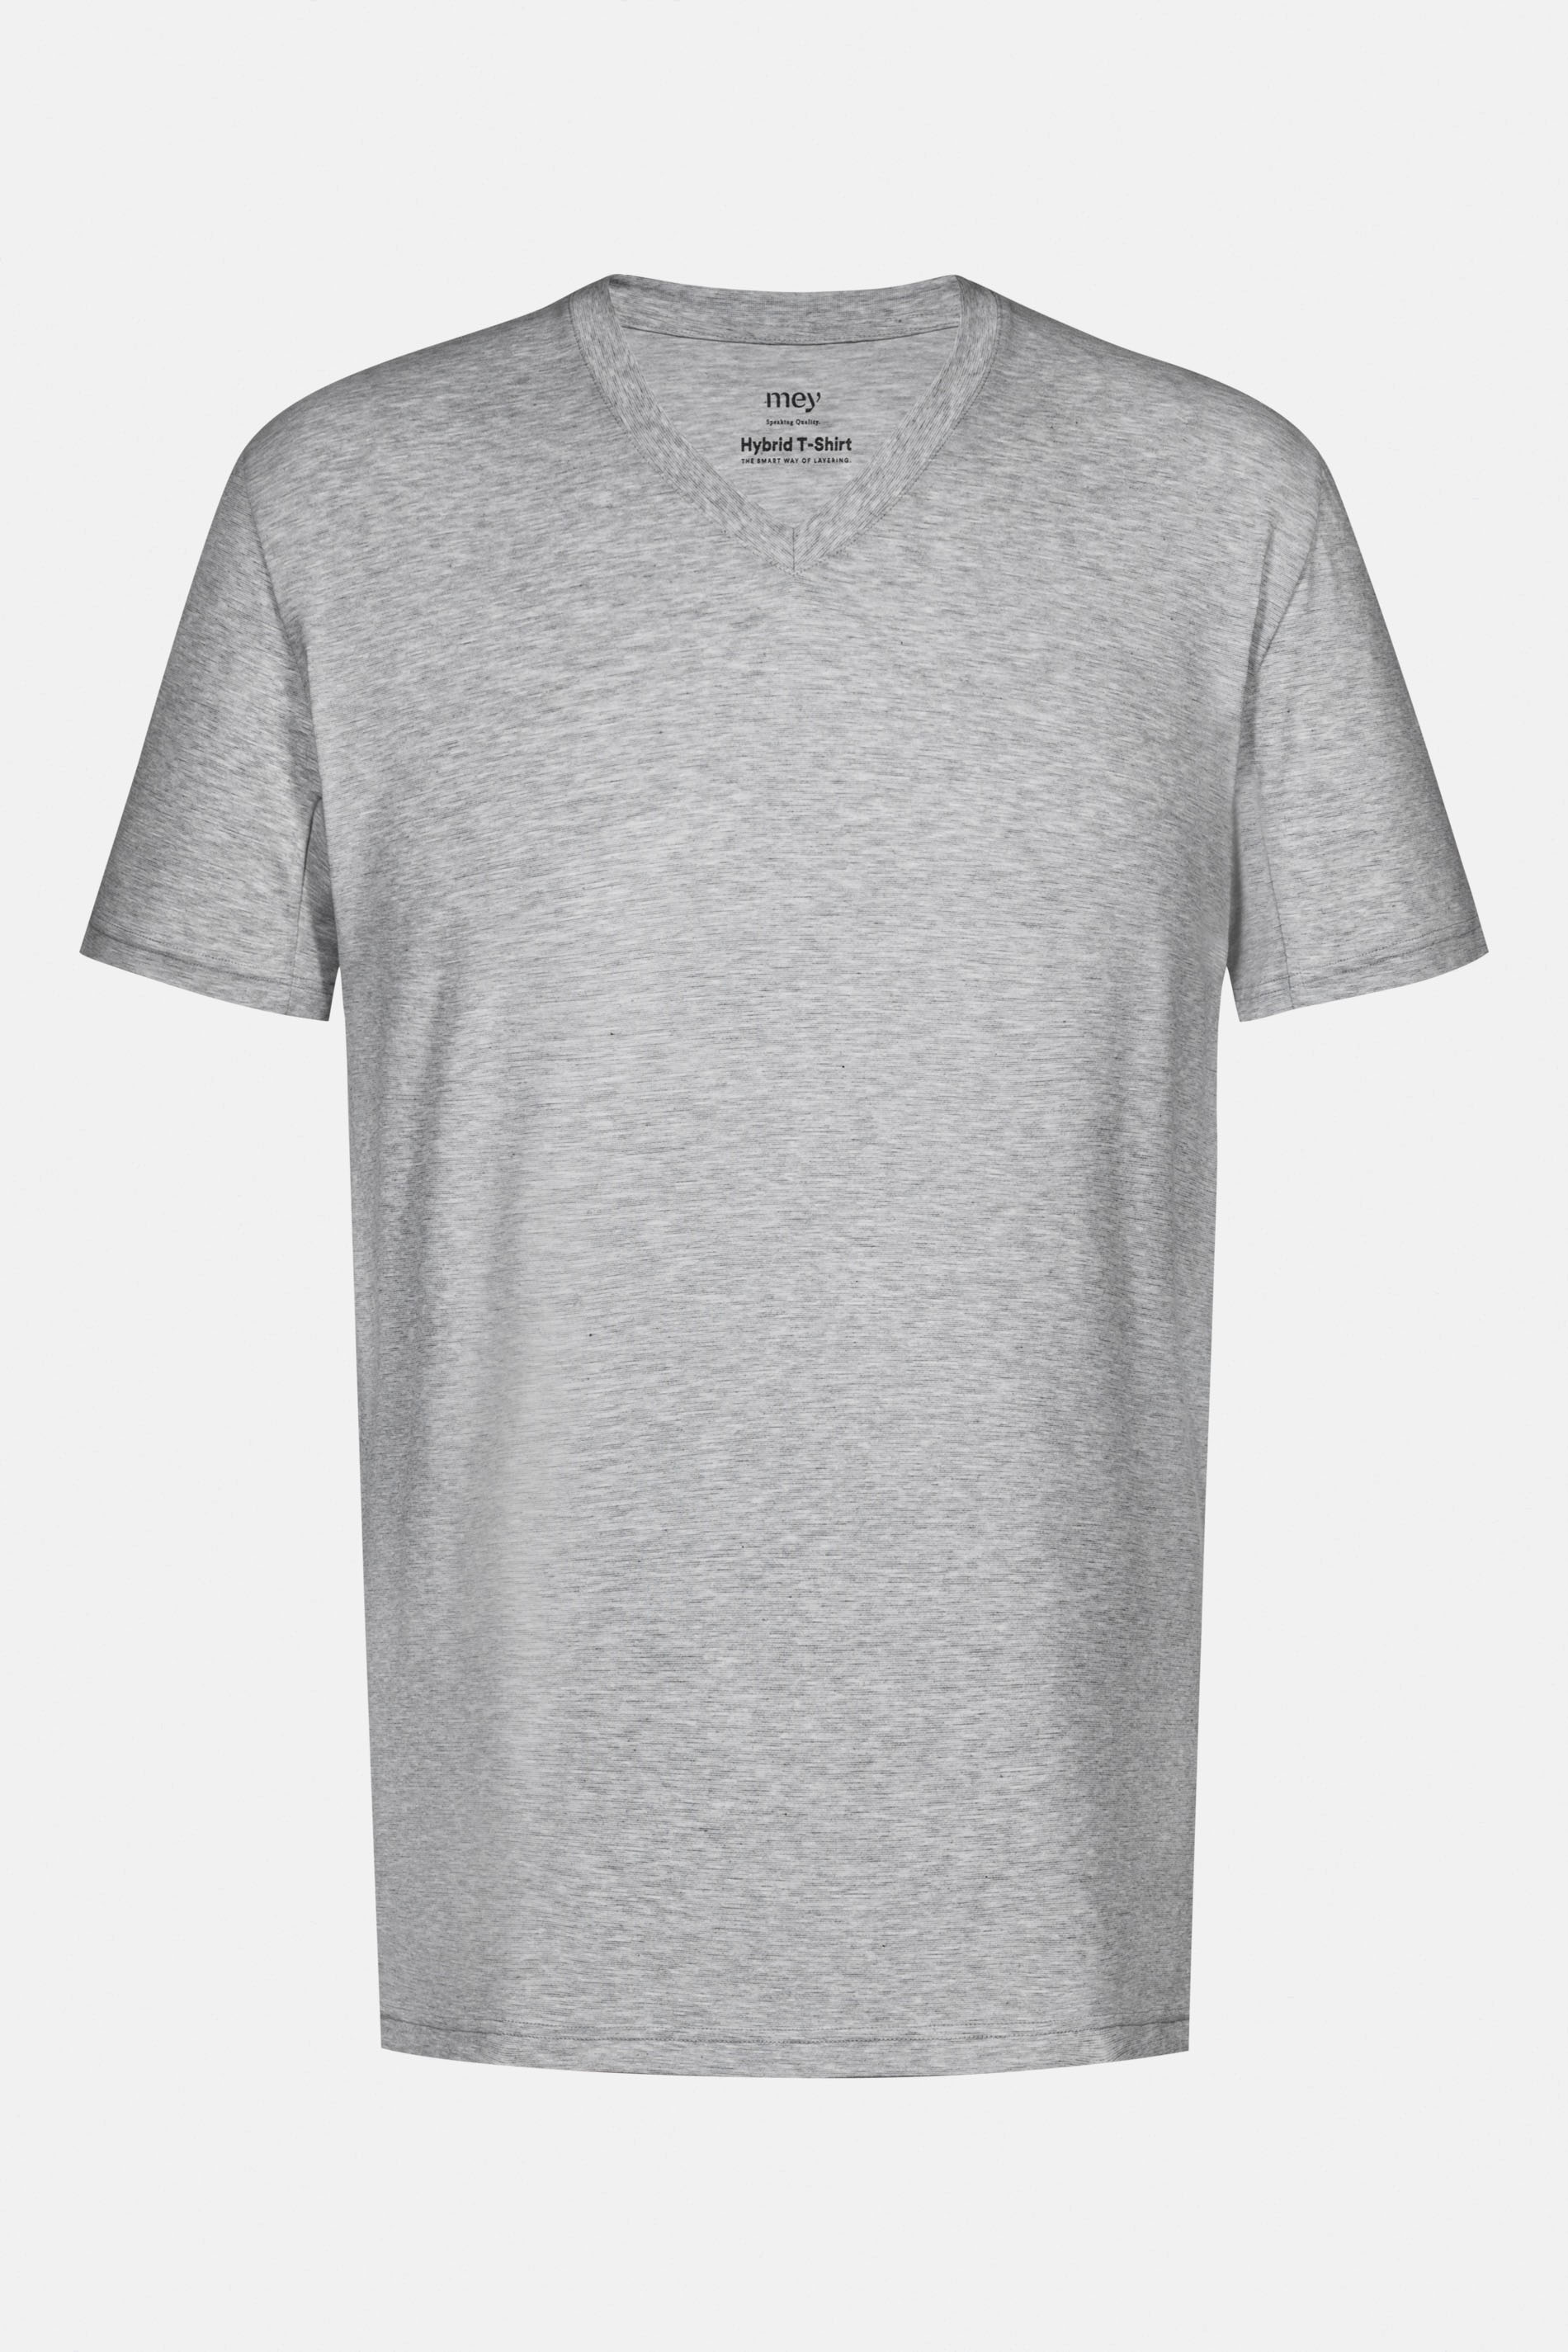 Hybrid T-Shirt Light Grey Melange Serie Hybrid T-Shirt Freisteller | mey®